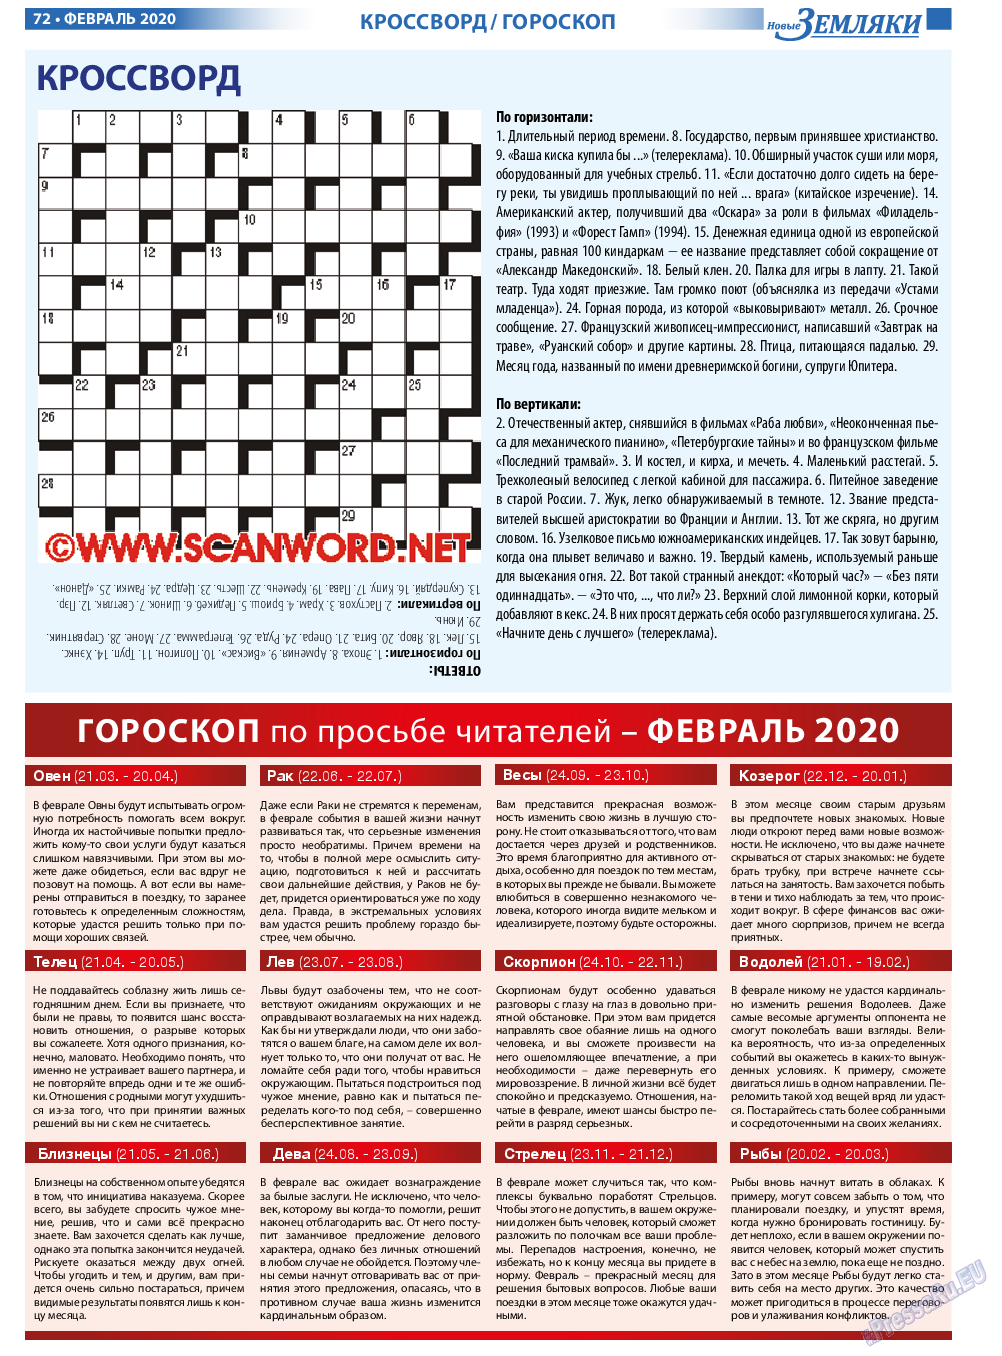 Новые Земляки, газета. 2020 №2 стр.72